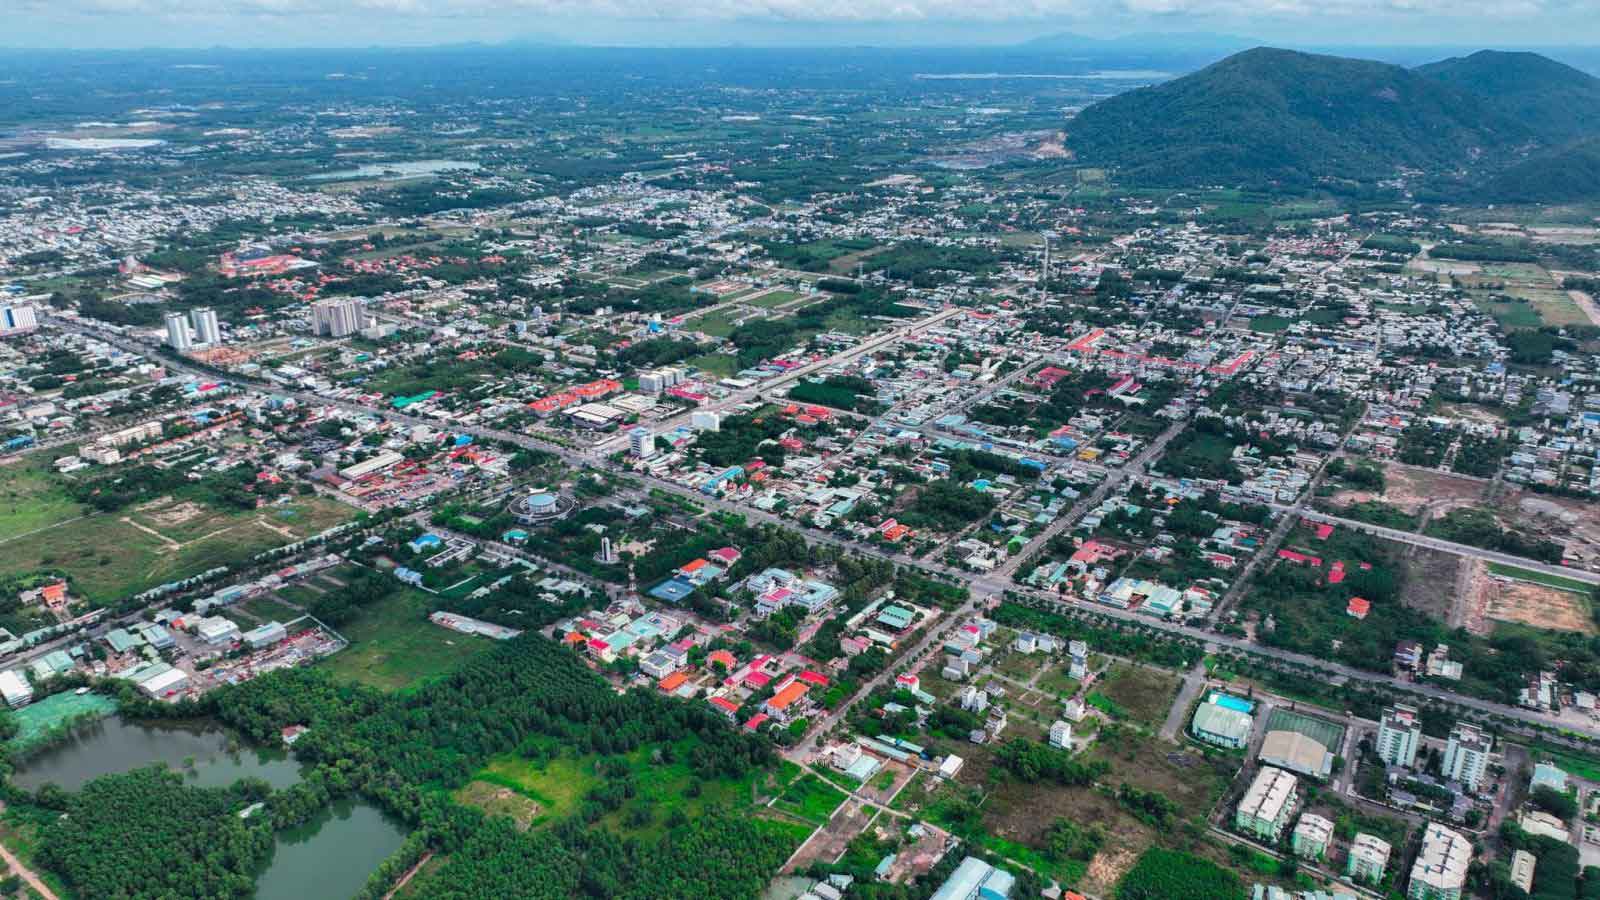 Thị Xã Phú Mỹ đầu tư quy hoạch bài bản và đồng bộ trong những năm gần đây 